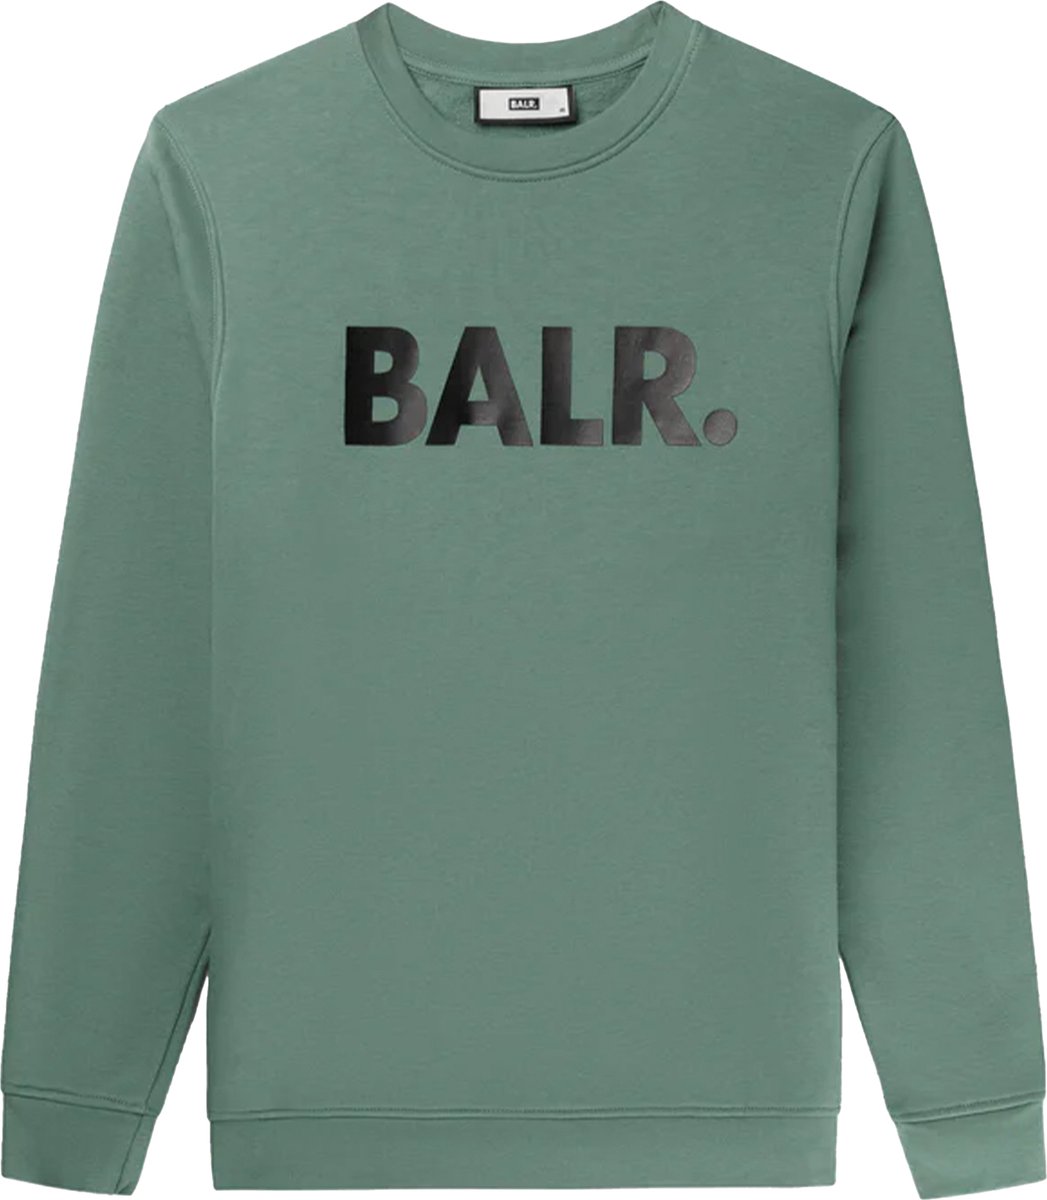 BALR. Trui Groen Katoen maat S Brand straight crewneck sweaters groen